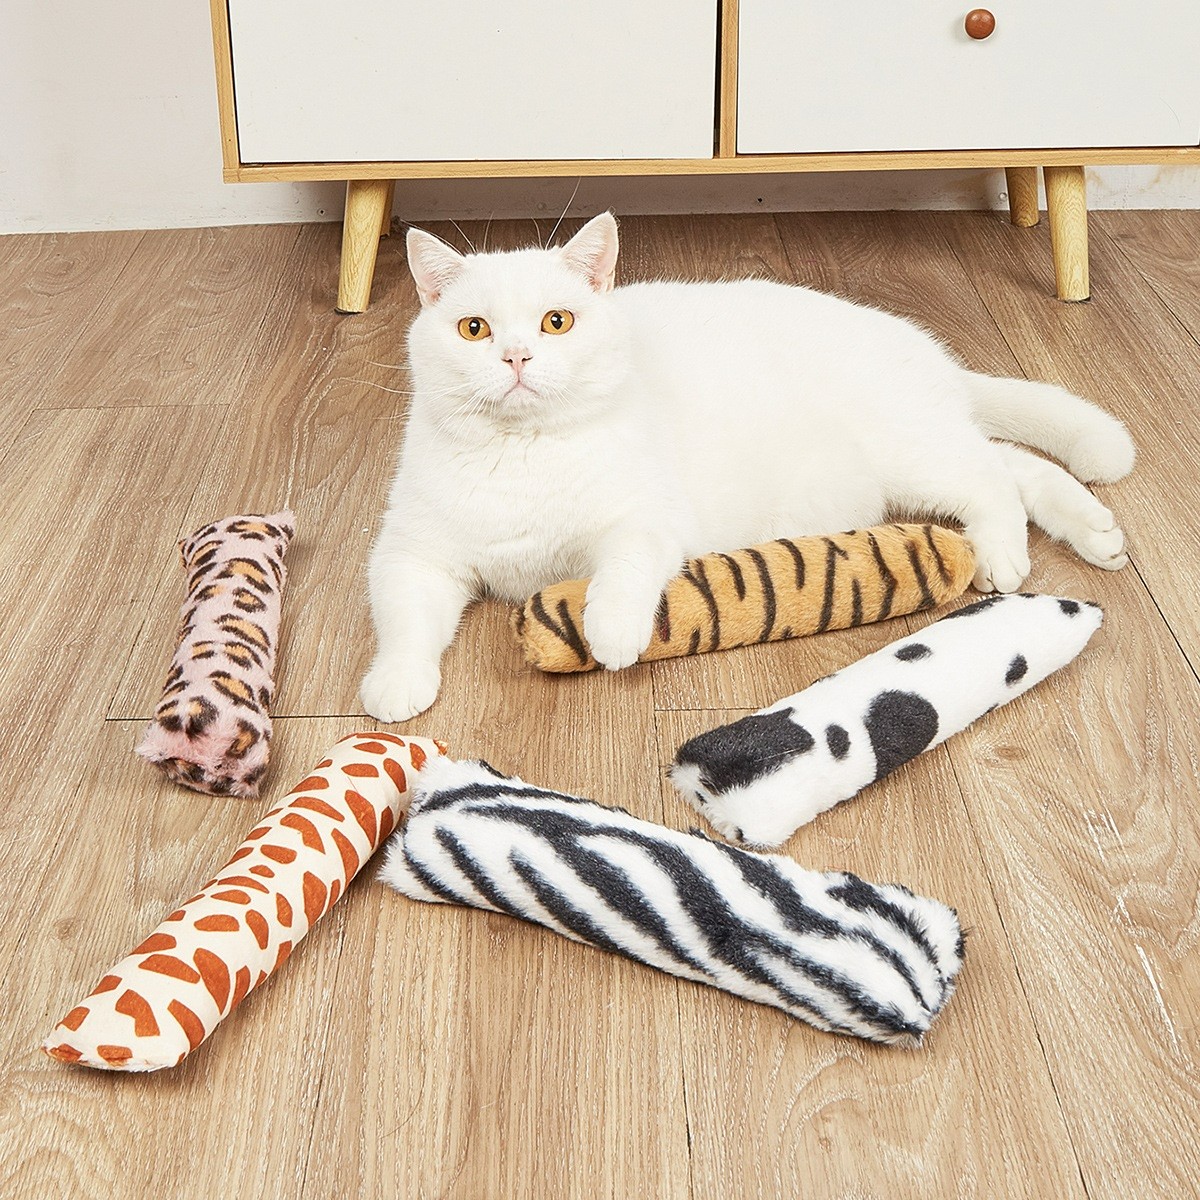 猫咪猫薄荷抱枕 豹纹款式耐咬互动猫玩具 长条抱枕批发